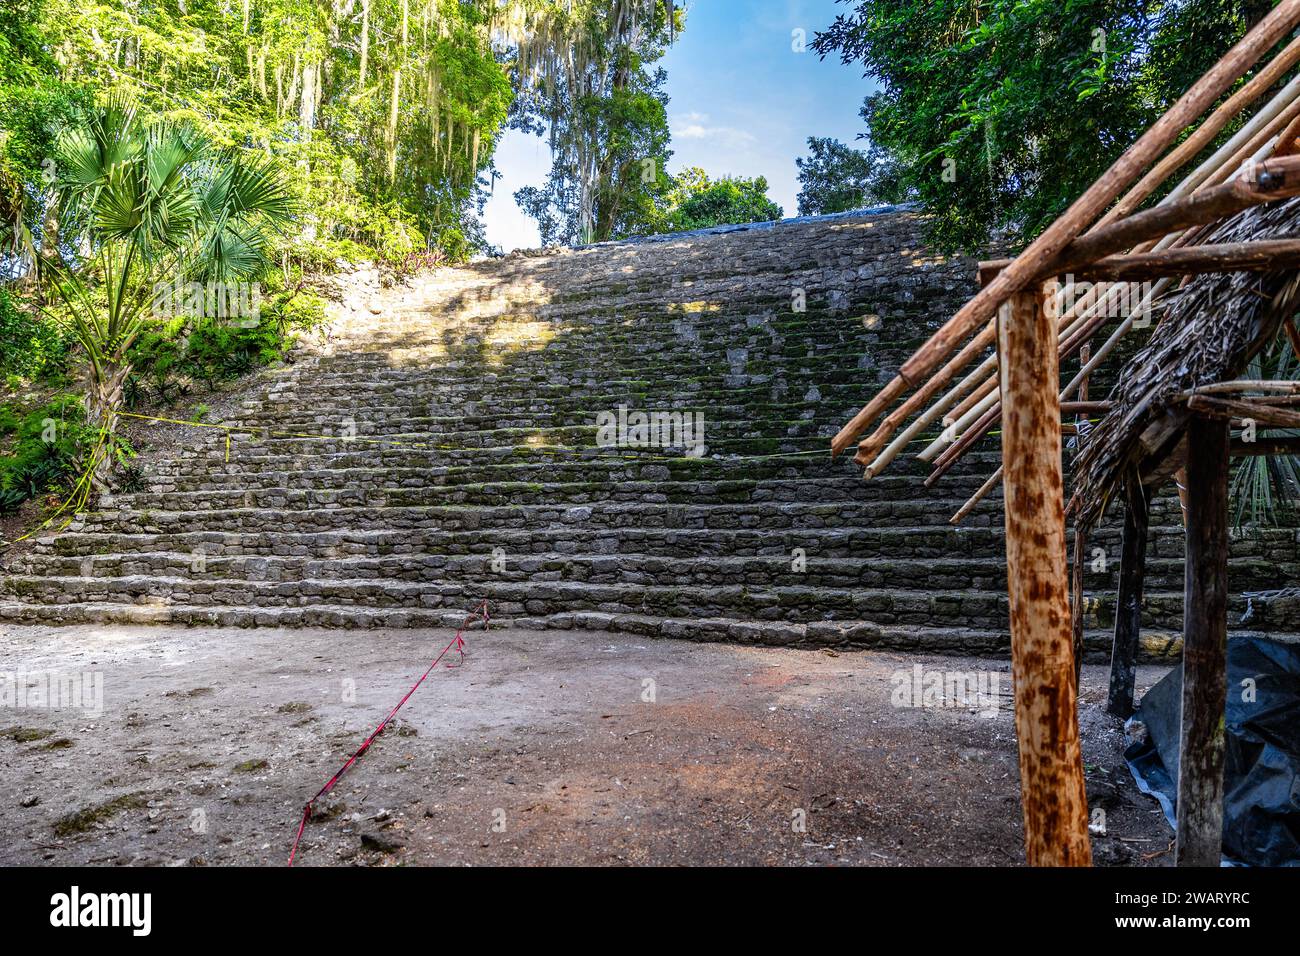 Un ensemble d'escaliers raides et étroits sculptés dans un paysage luxuriant, jungle à Cozumel, au Mexique Banque D'Images